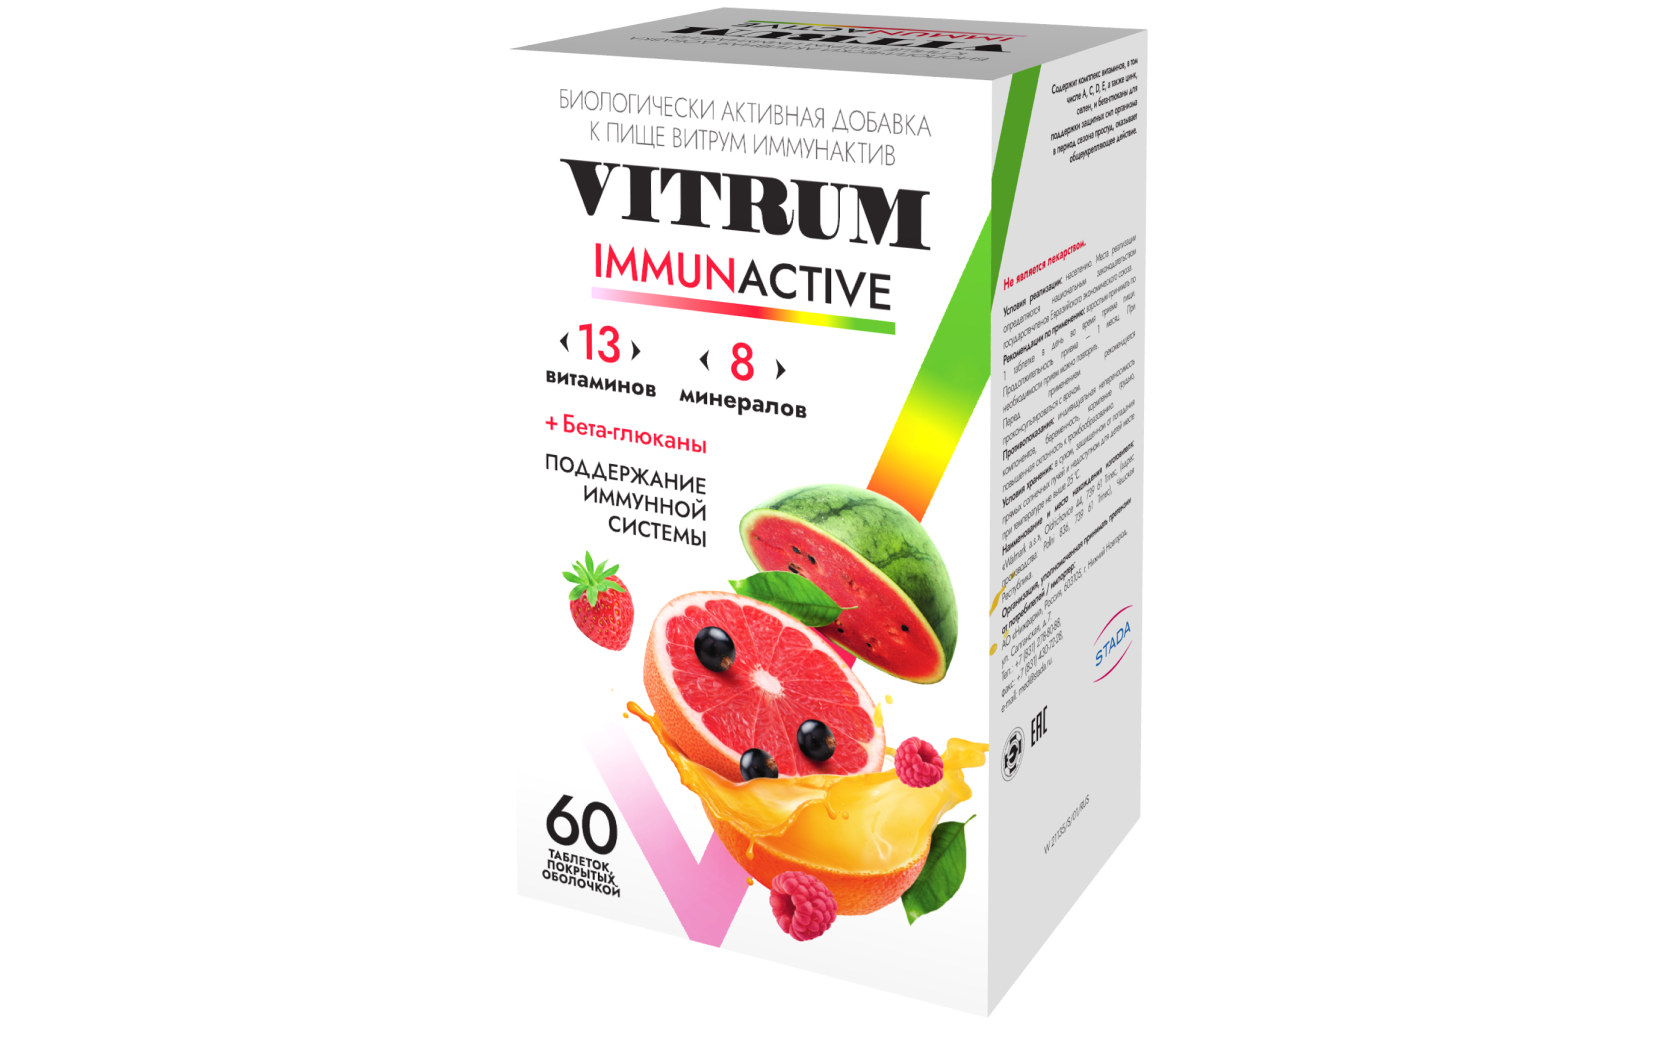 Витрум® Иммунактив 60 таблеток: фото упаковки, действующее вещество, подробная инструкция по применению